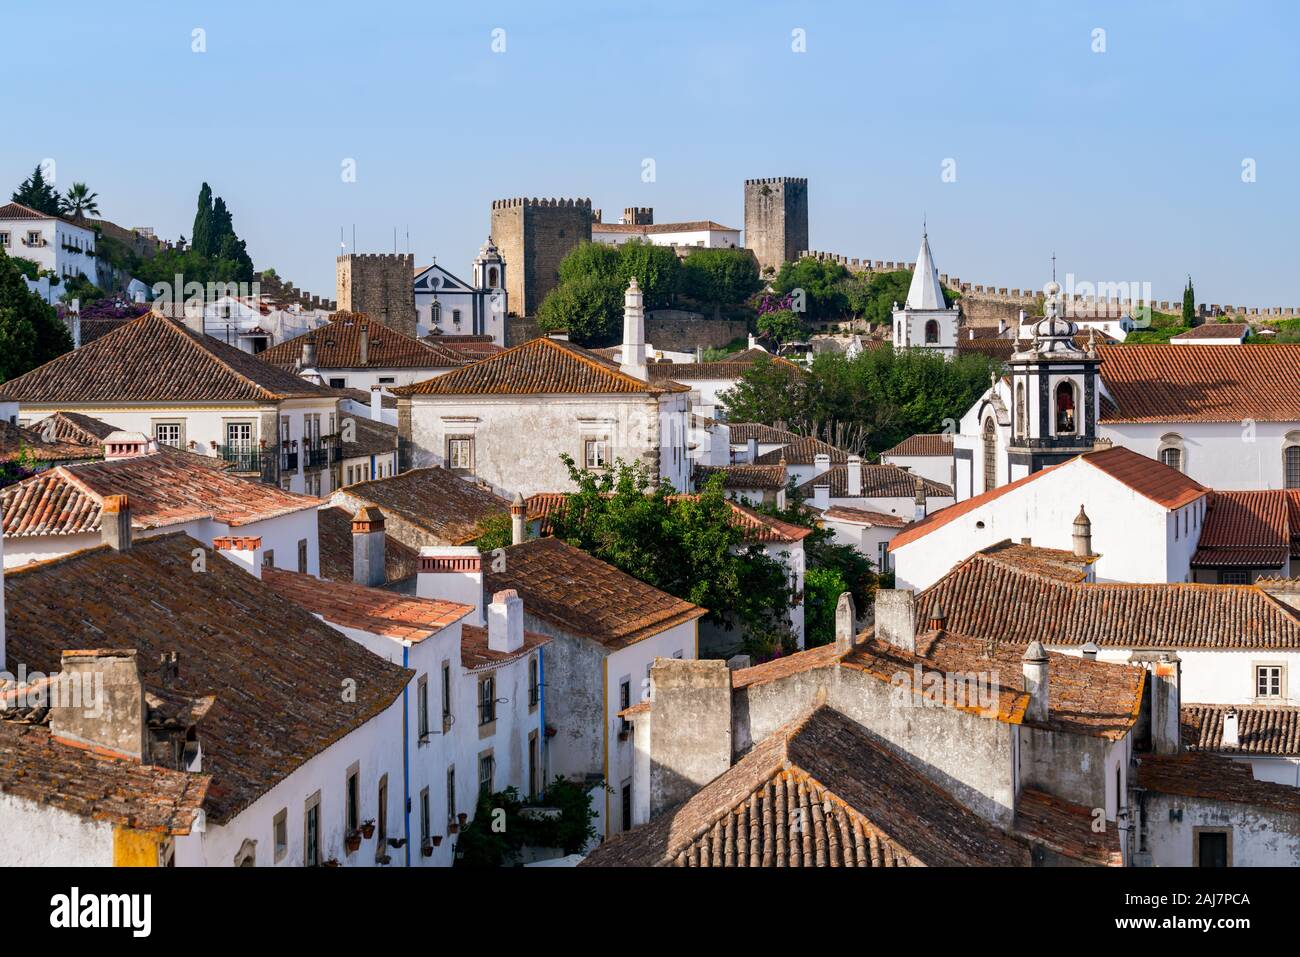 Blick über die Dächer und die alten Gassen und Häuser der portugiesischen Dorf Obidos Obidos in Richtung Schloss. Foto: Tony Taylor Stockfoto